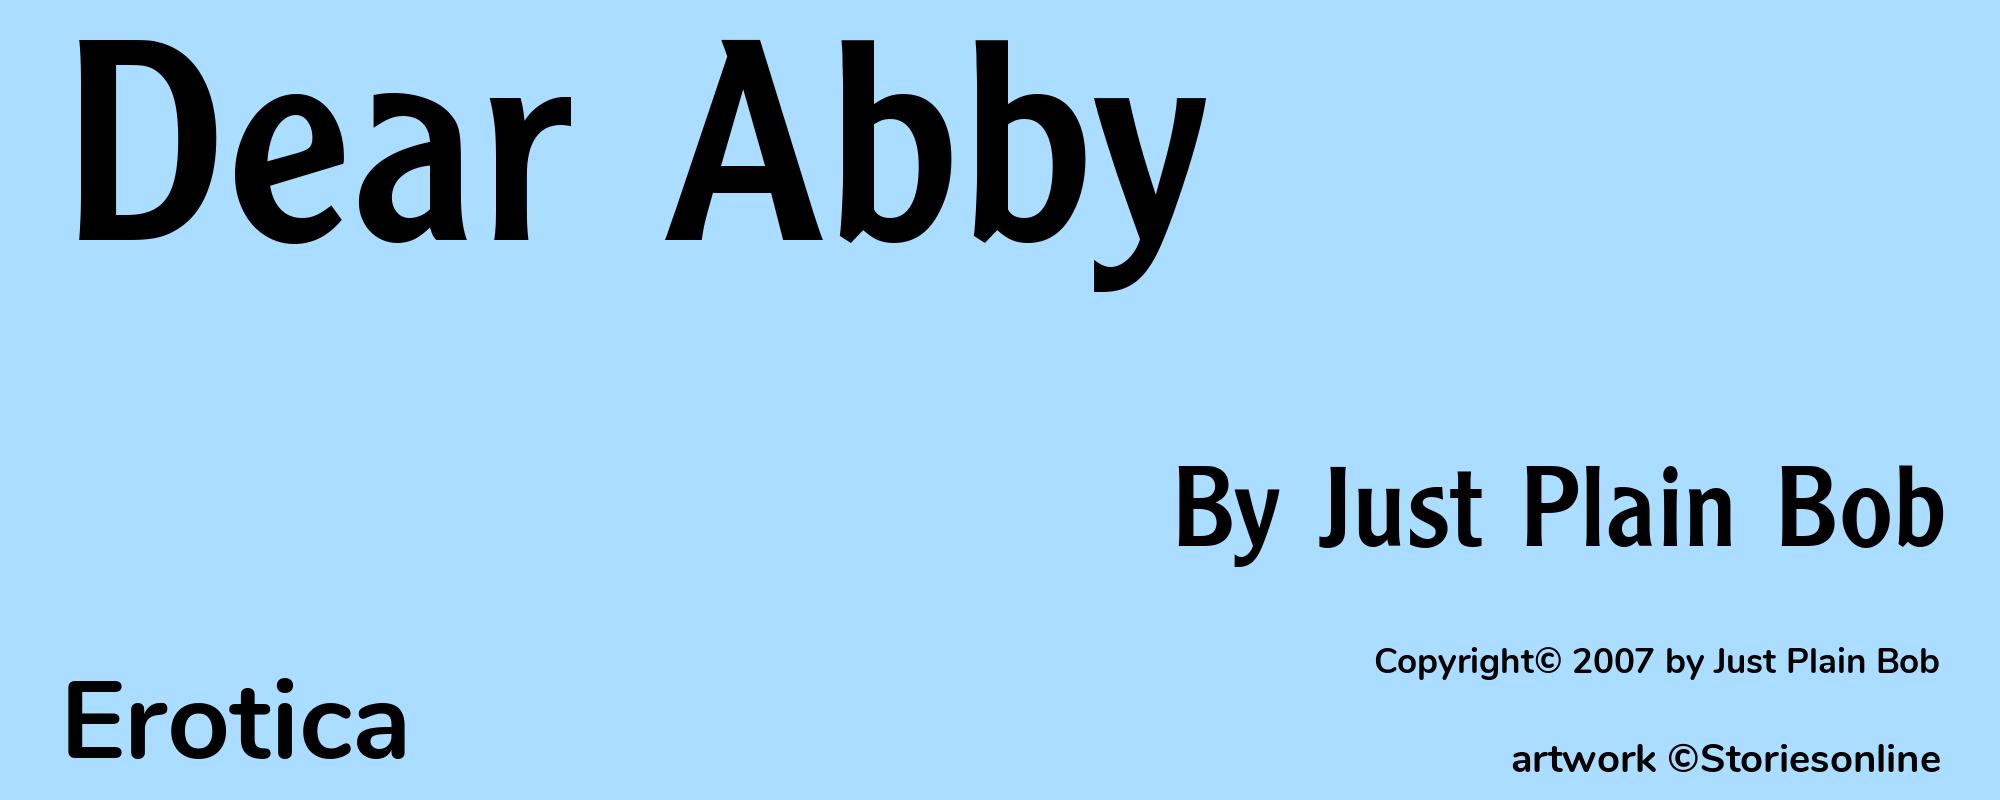 Dear Abby - Cover